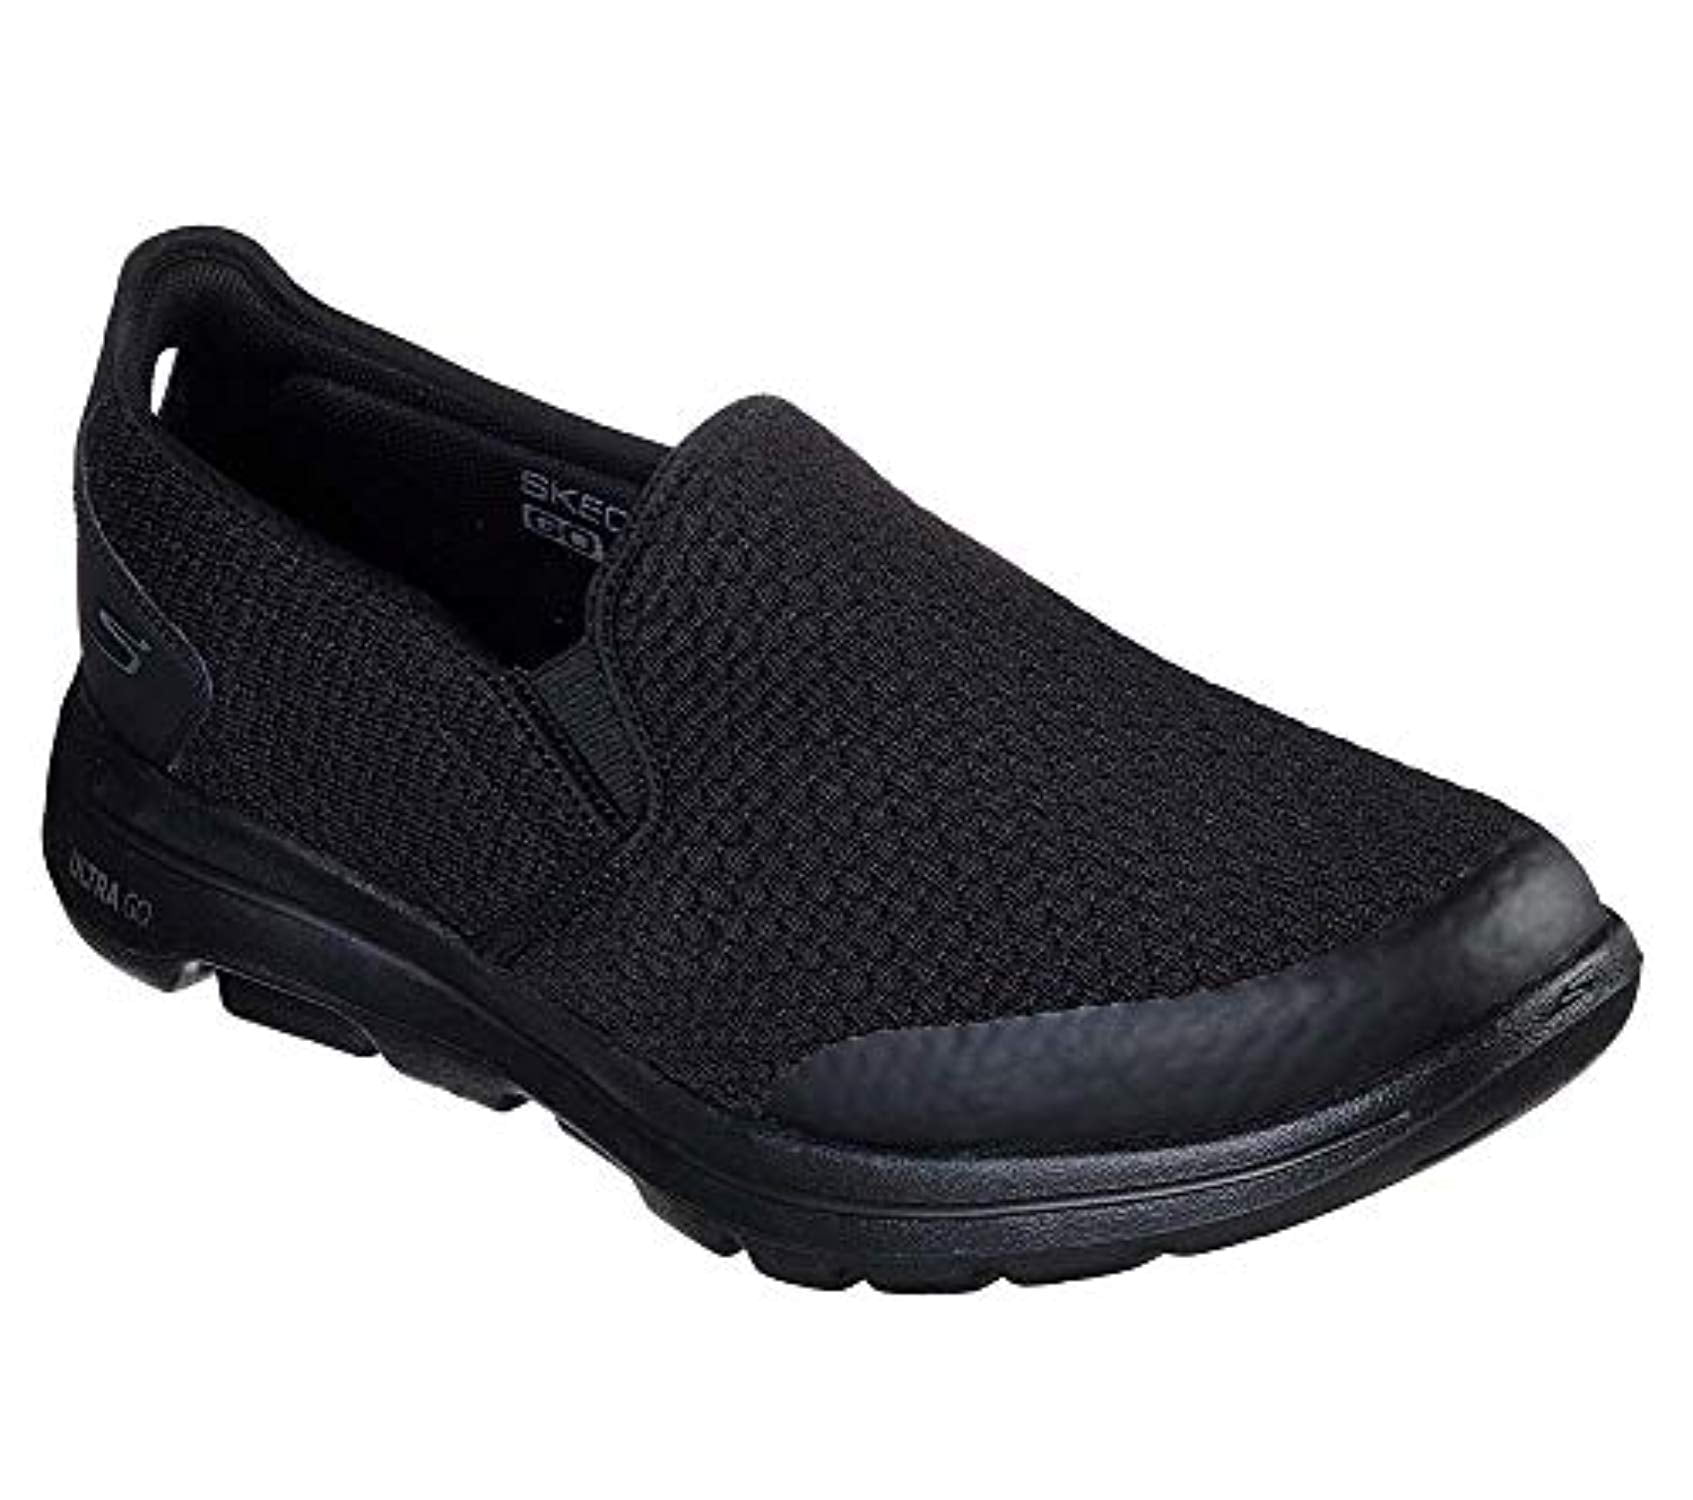 Skechers - Skechers Men's GO Walk 5 - APPRIZE Shoe, Black, 8.5 Extra ...